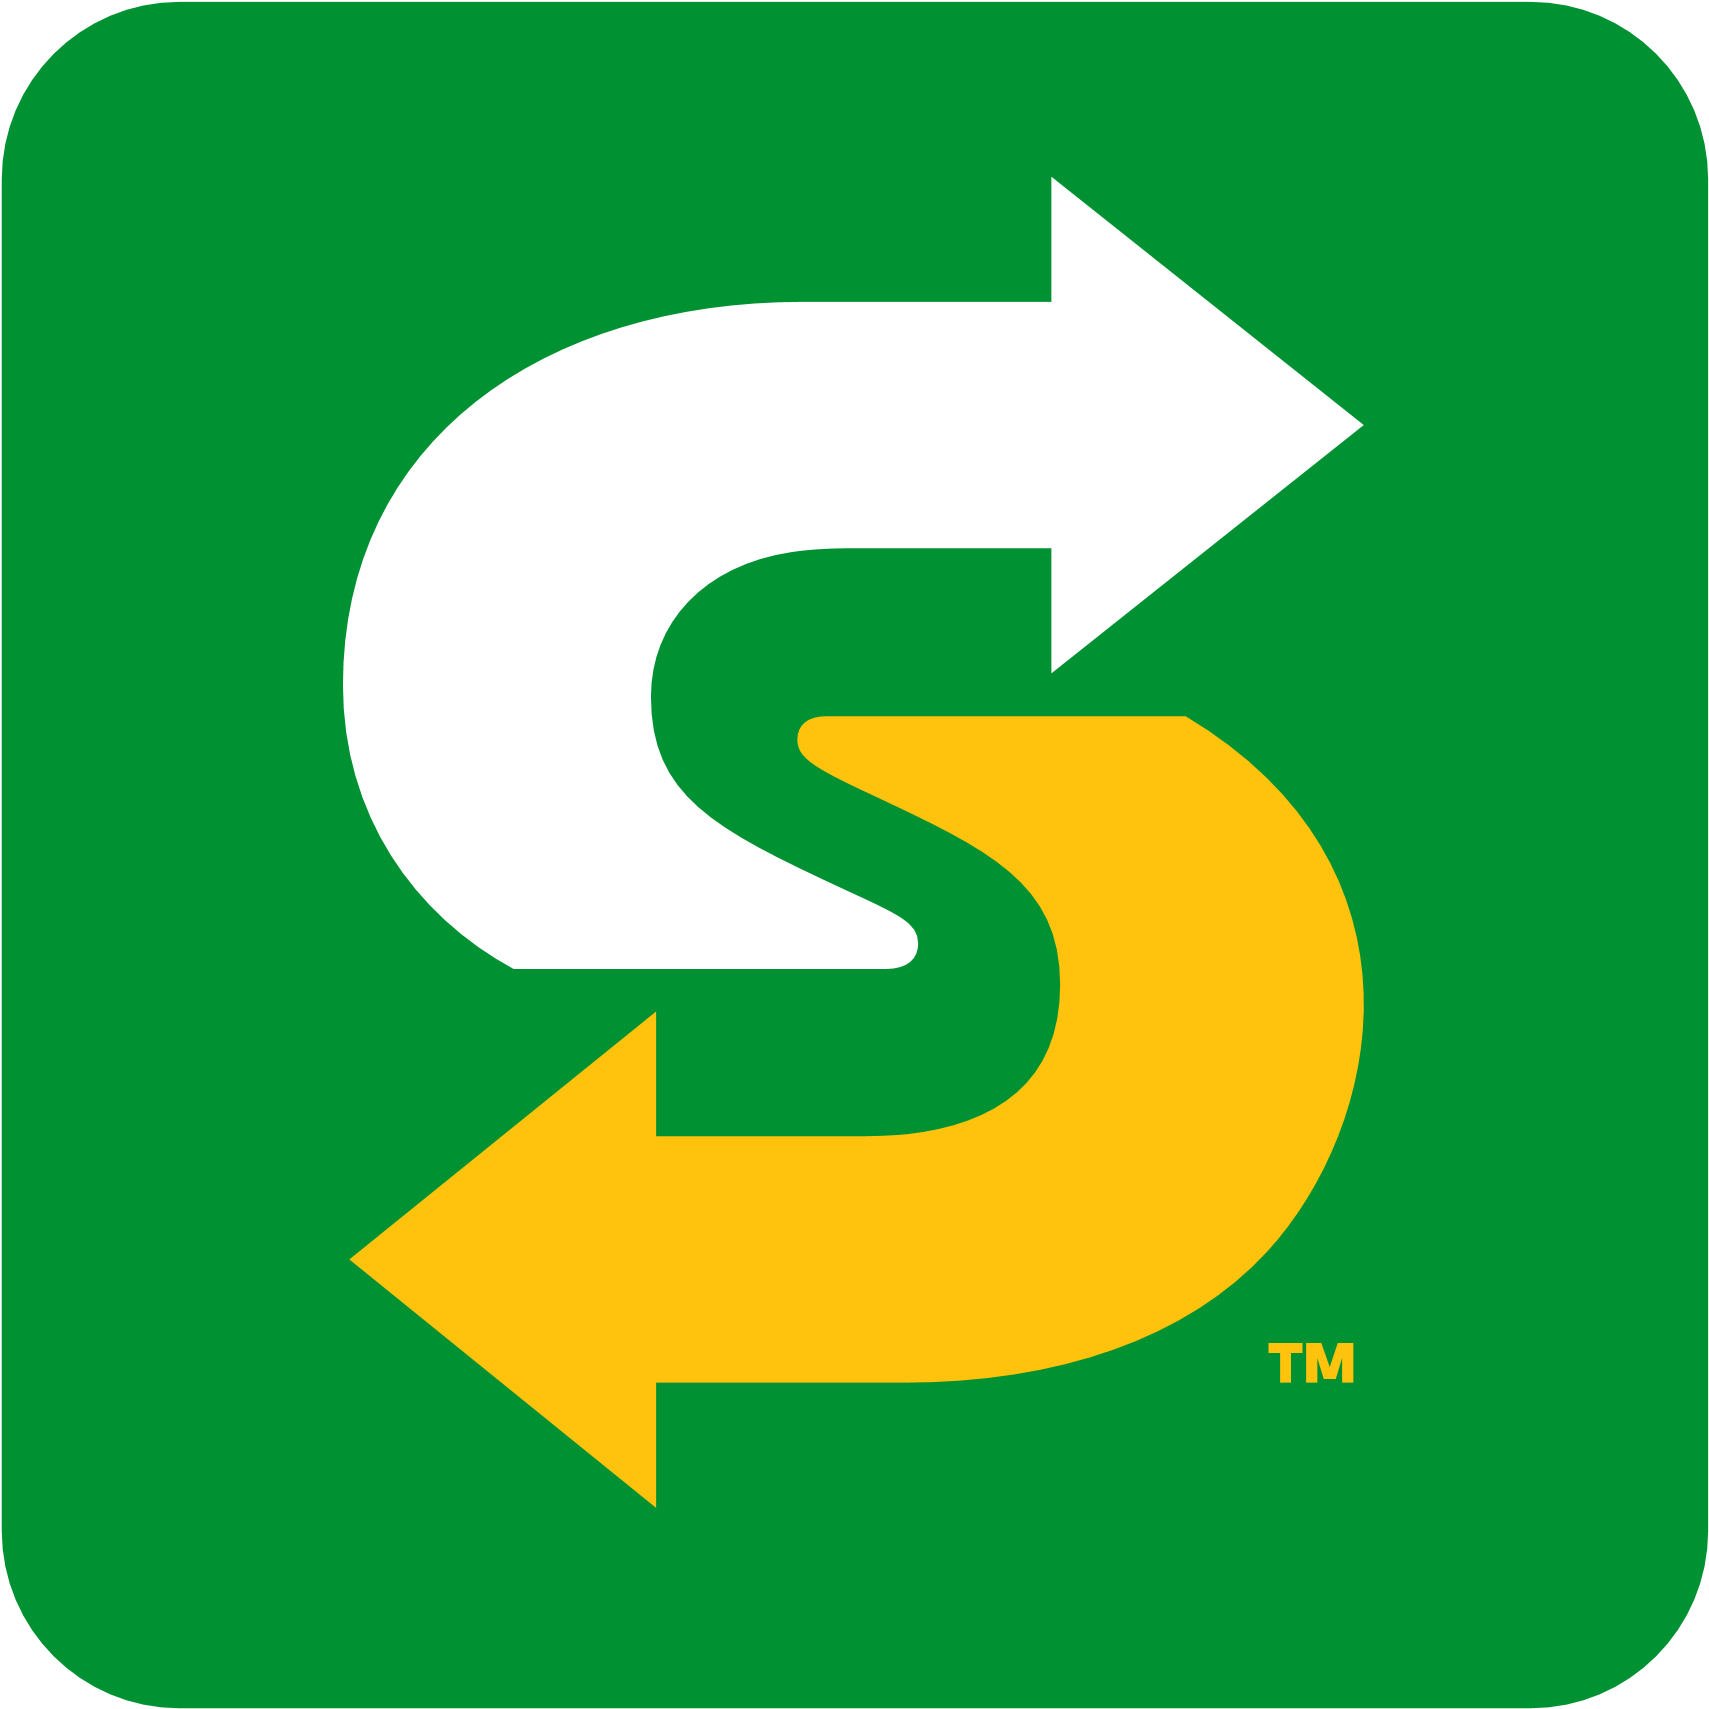 Subway Logo Png, Subway Logo 